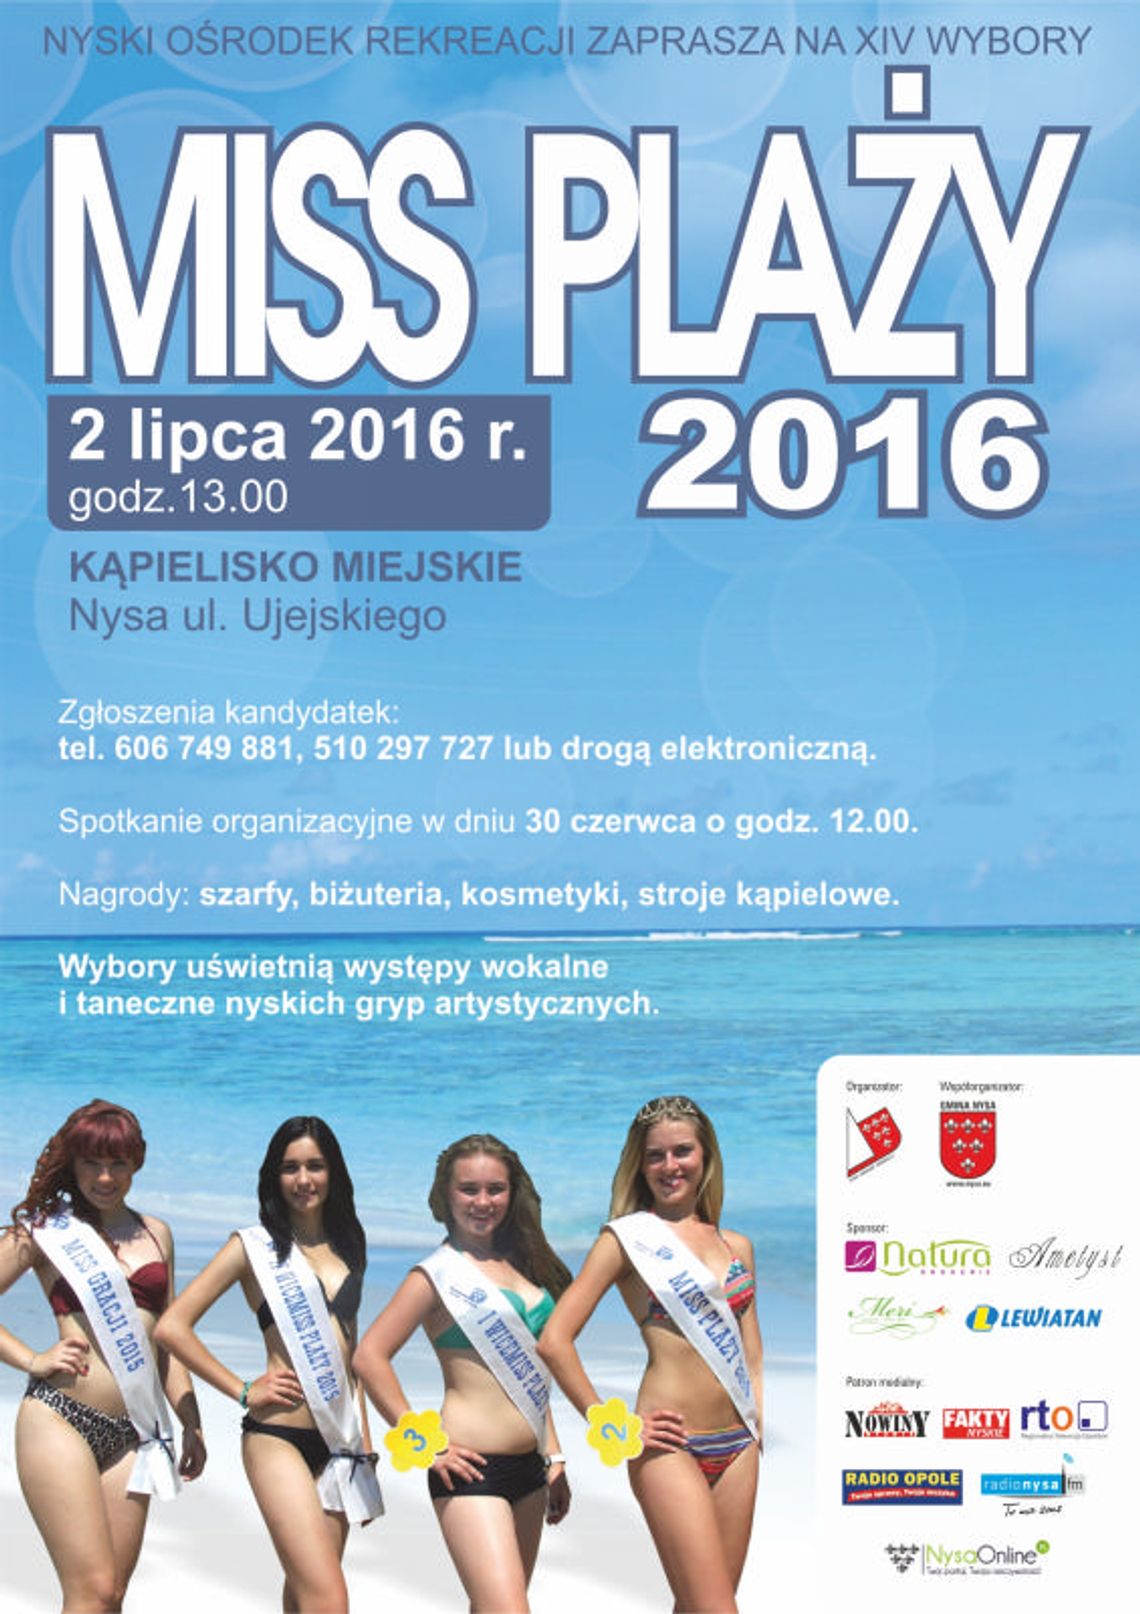 Miss plaży 2016